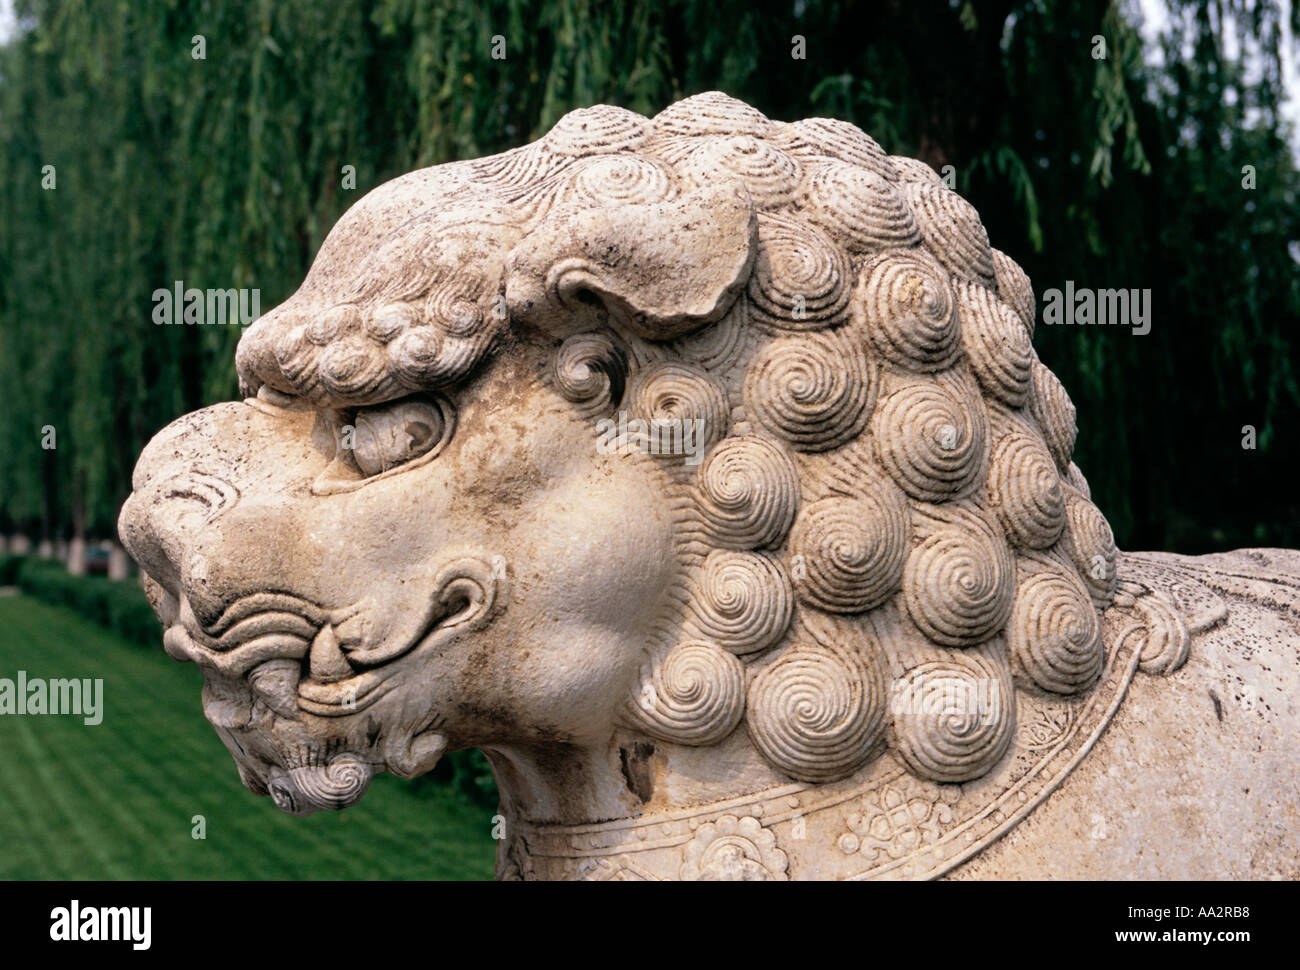 Lion en pierre, statue en pierre, de l'esprit Cours à Tombeaux Ming, District, municipalité de Beijing, China, Asia Banque D'Images